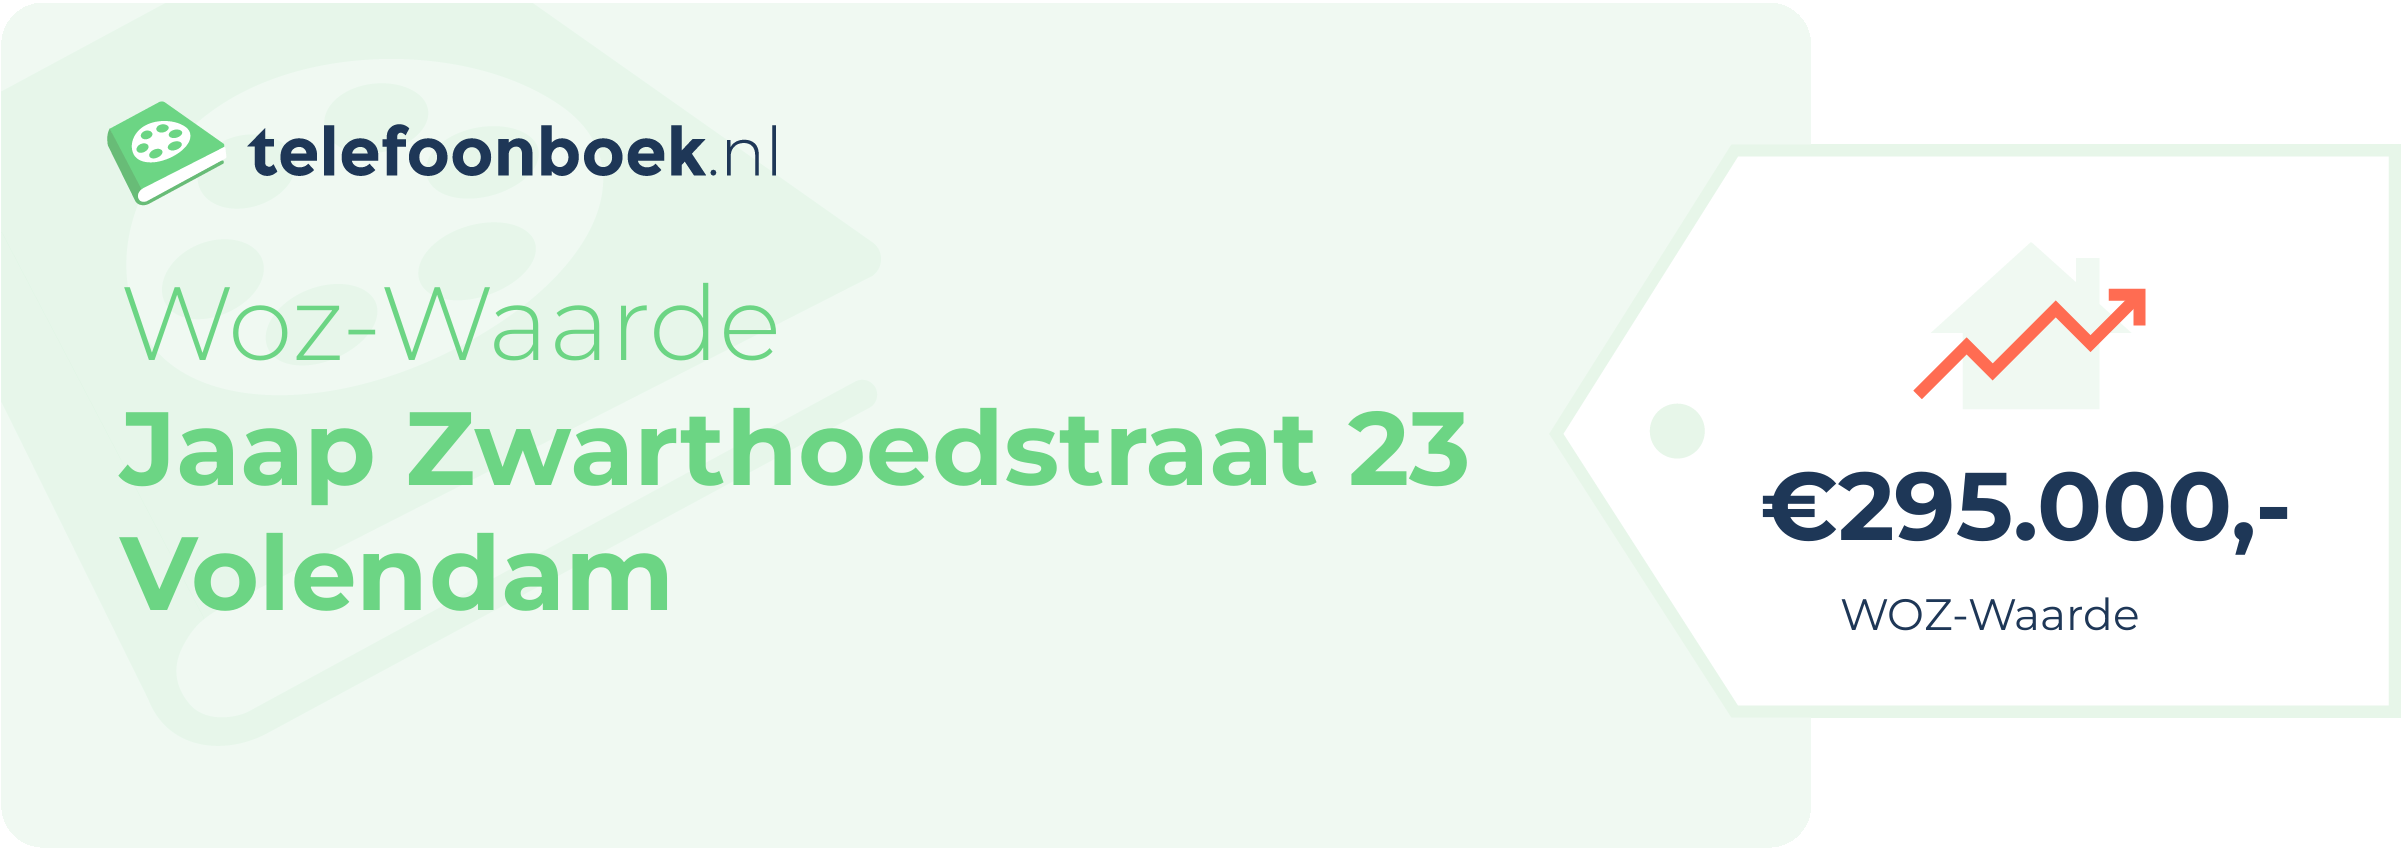 WOZ-waarde Jaap Zwarthoedstraat 23 Volendam